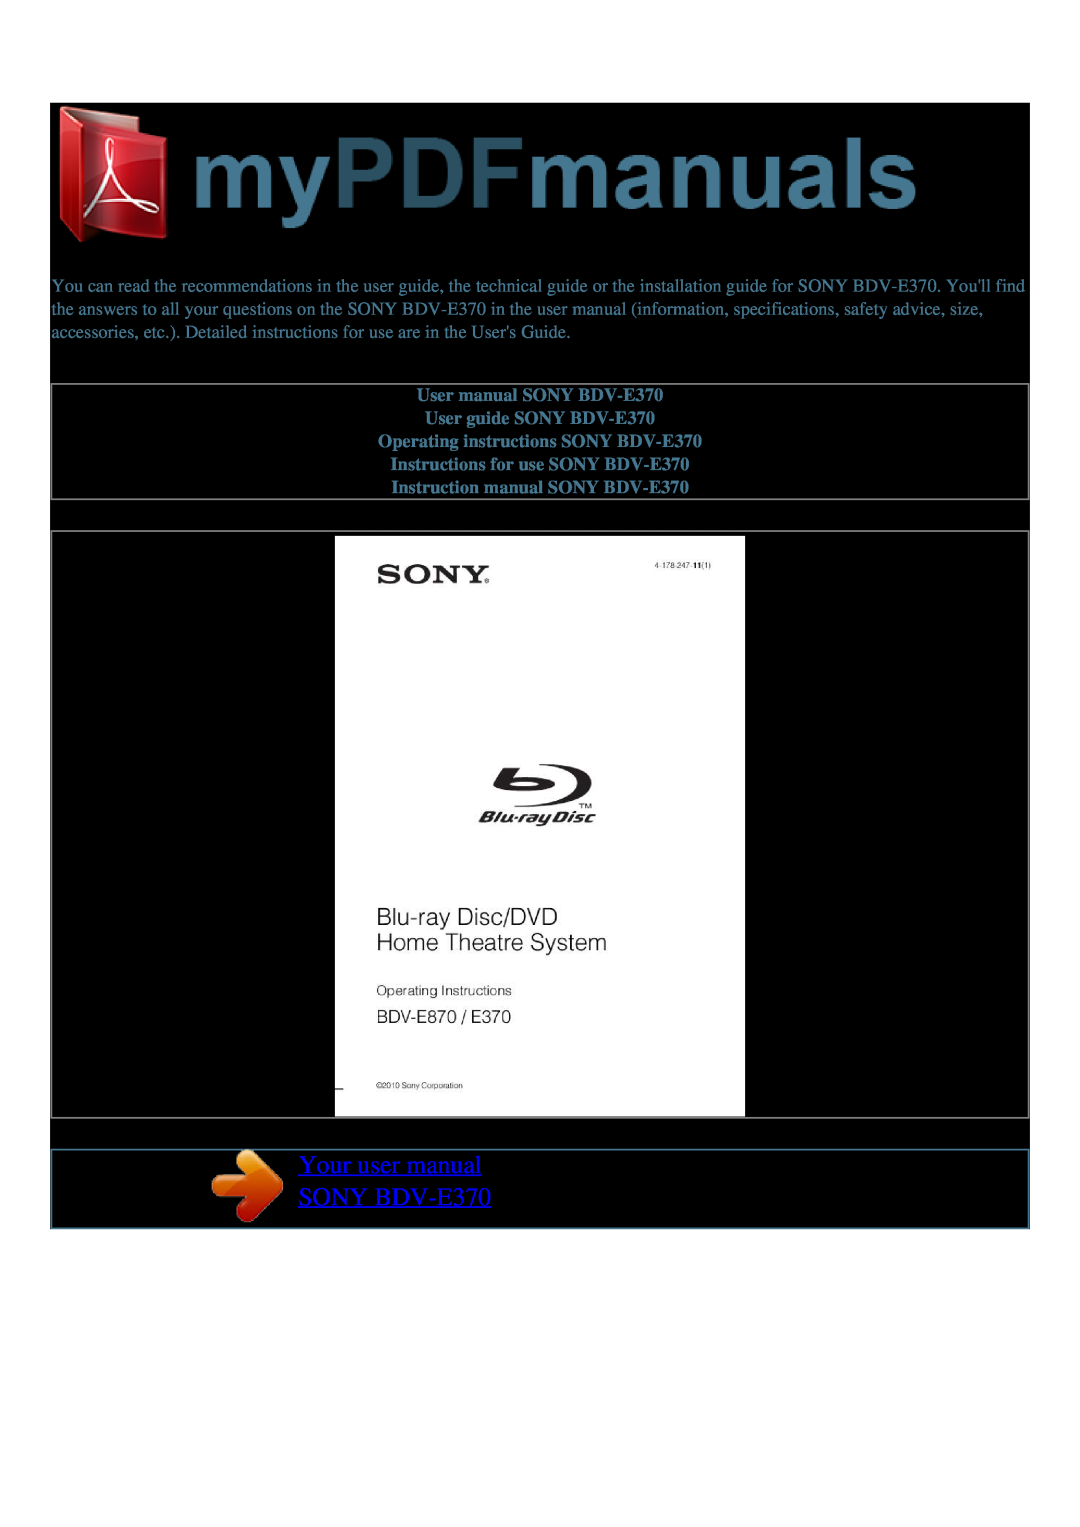 Sony user manual User guide SONY BDV-E370, Operating instructions SONY BDV-E370, Instructions for use SONY BDV-E370 